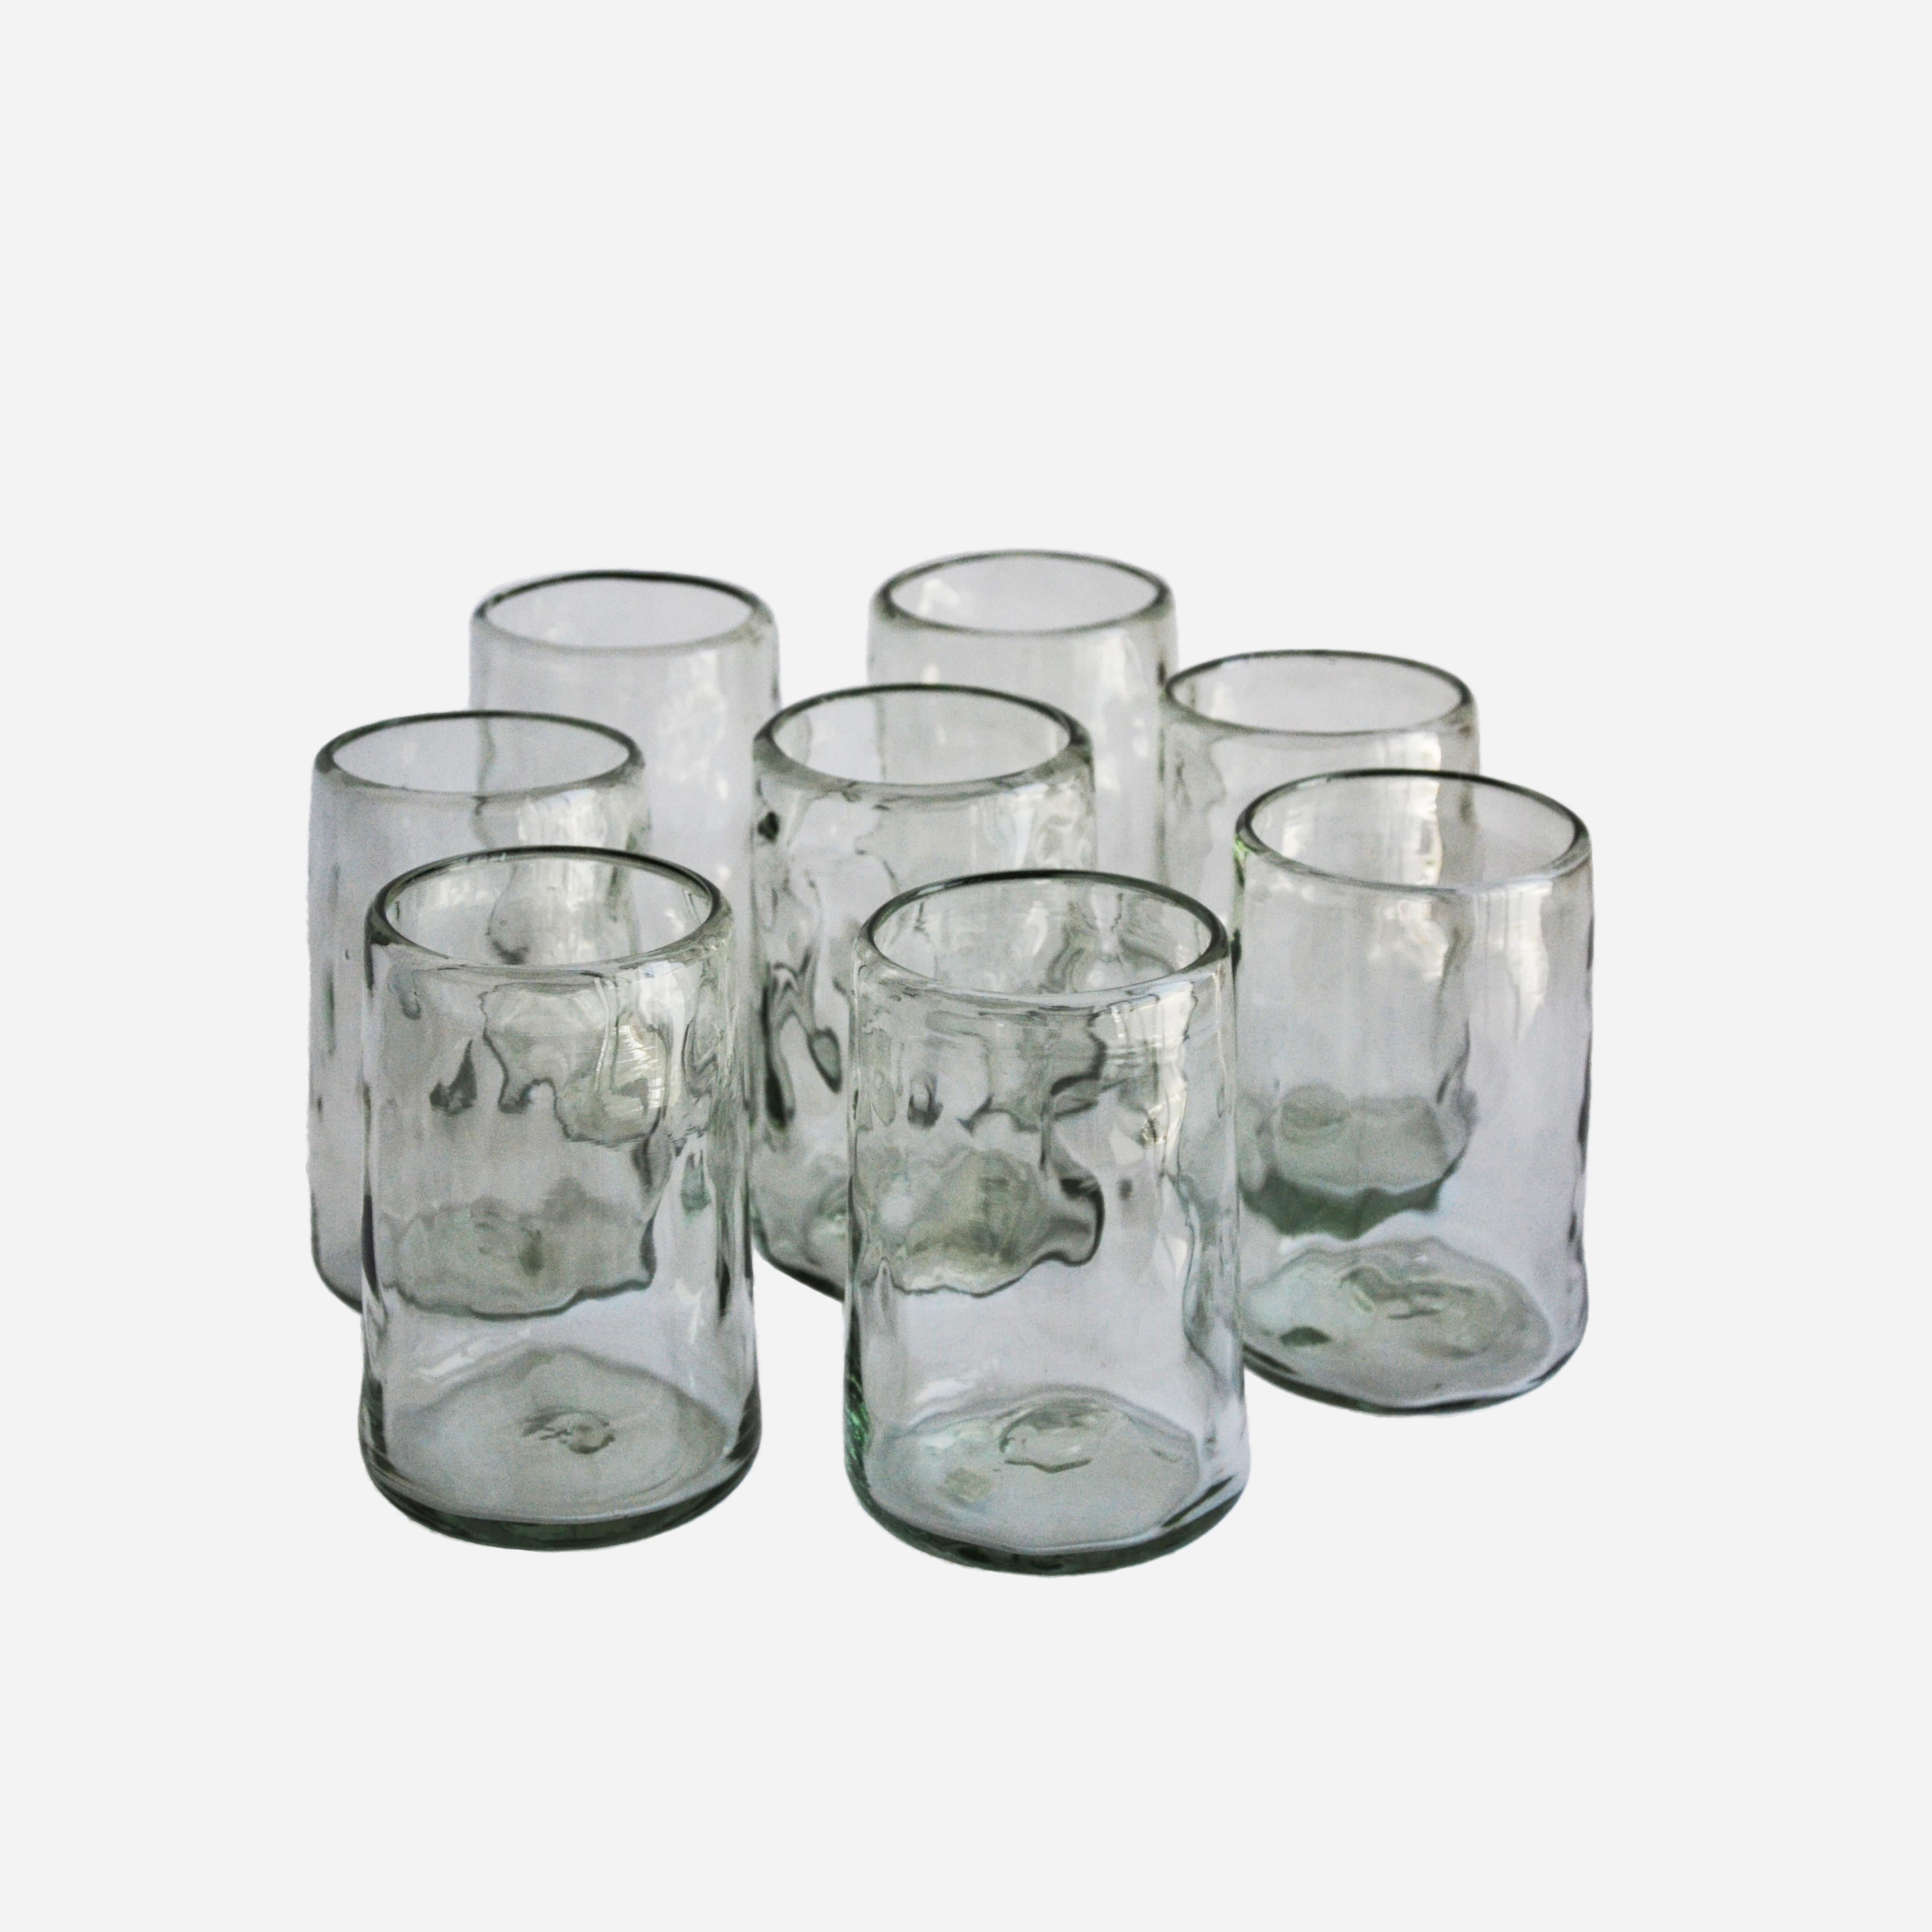 White Lights ist ein Set aus mundgeblasenen, transparenten Gläsern mit einer organischen Form, die von der natürlichen Oberfläche des Bodens inspiriert ist.

Nightlights of Mexico City ist eine Kollektion klassischer Brillen, die vom Nachtleben